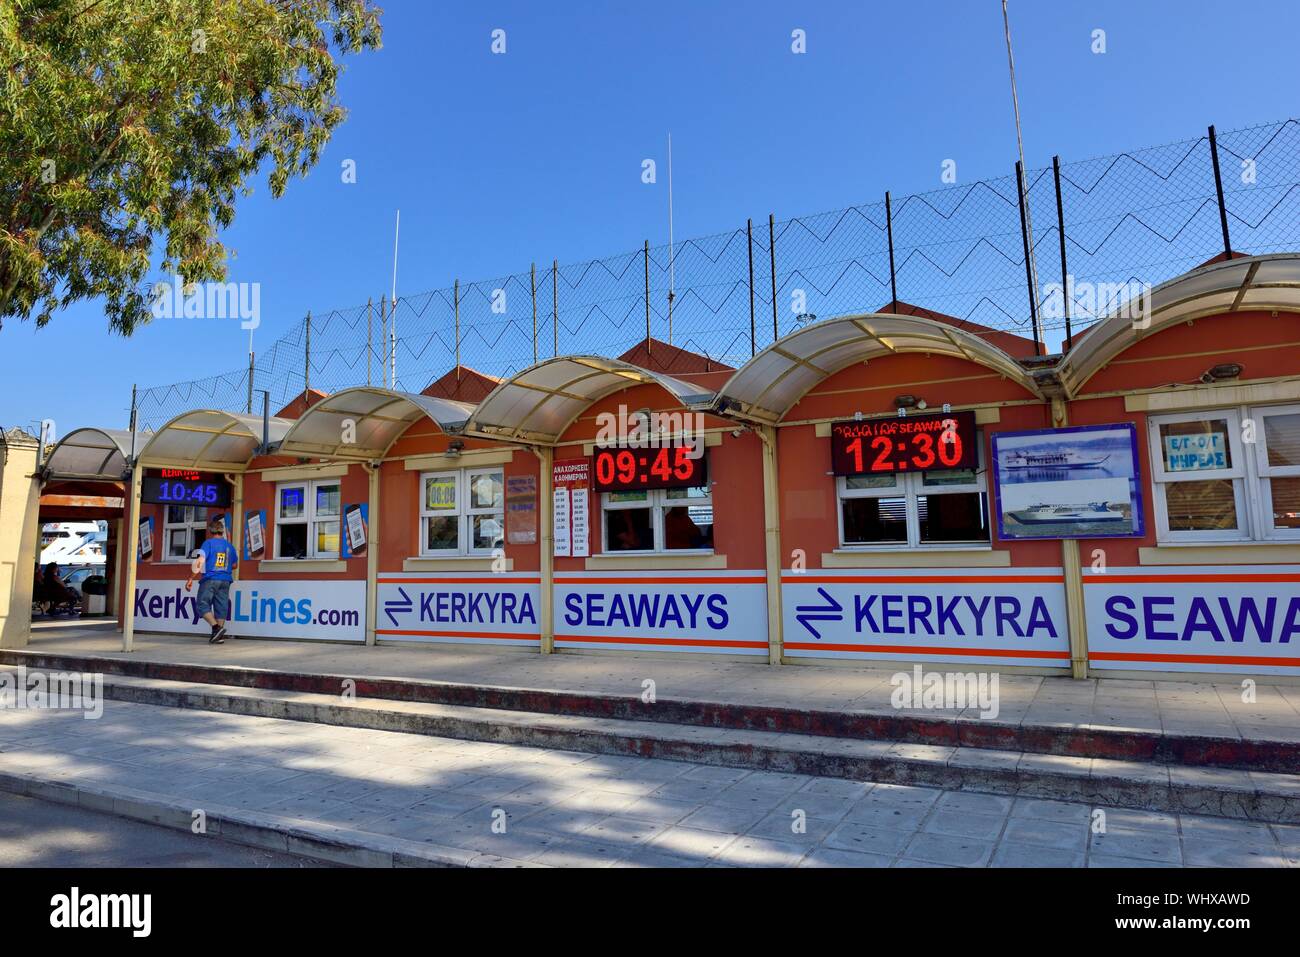 Biglietto del Traghetto,biglietti, prenotazione office,Kerkyra seaways,Kerkyra linee, Corfu, Isole Ionie, Grecia Foto Stock